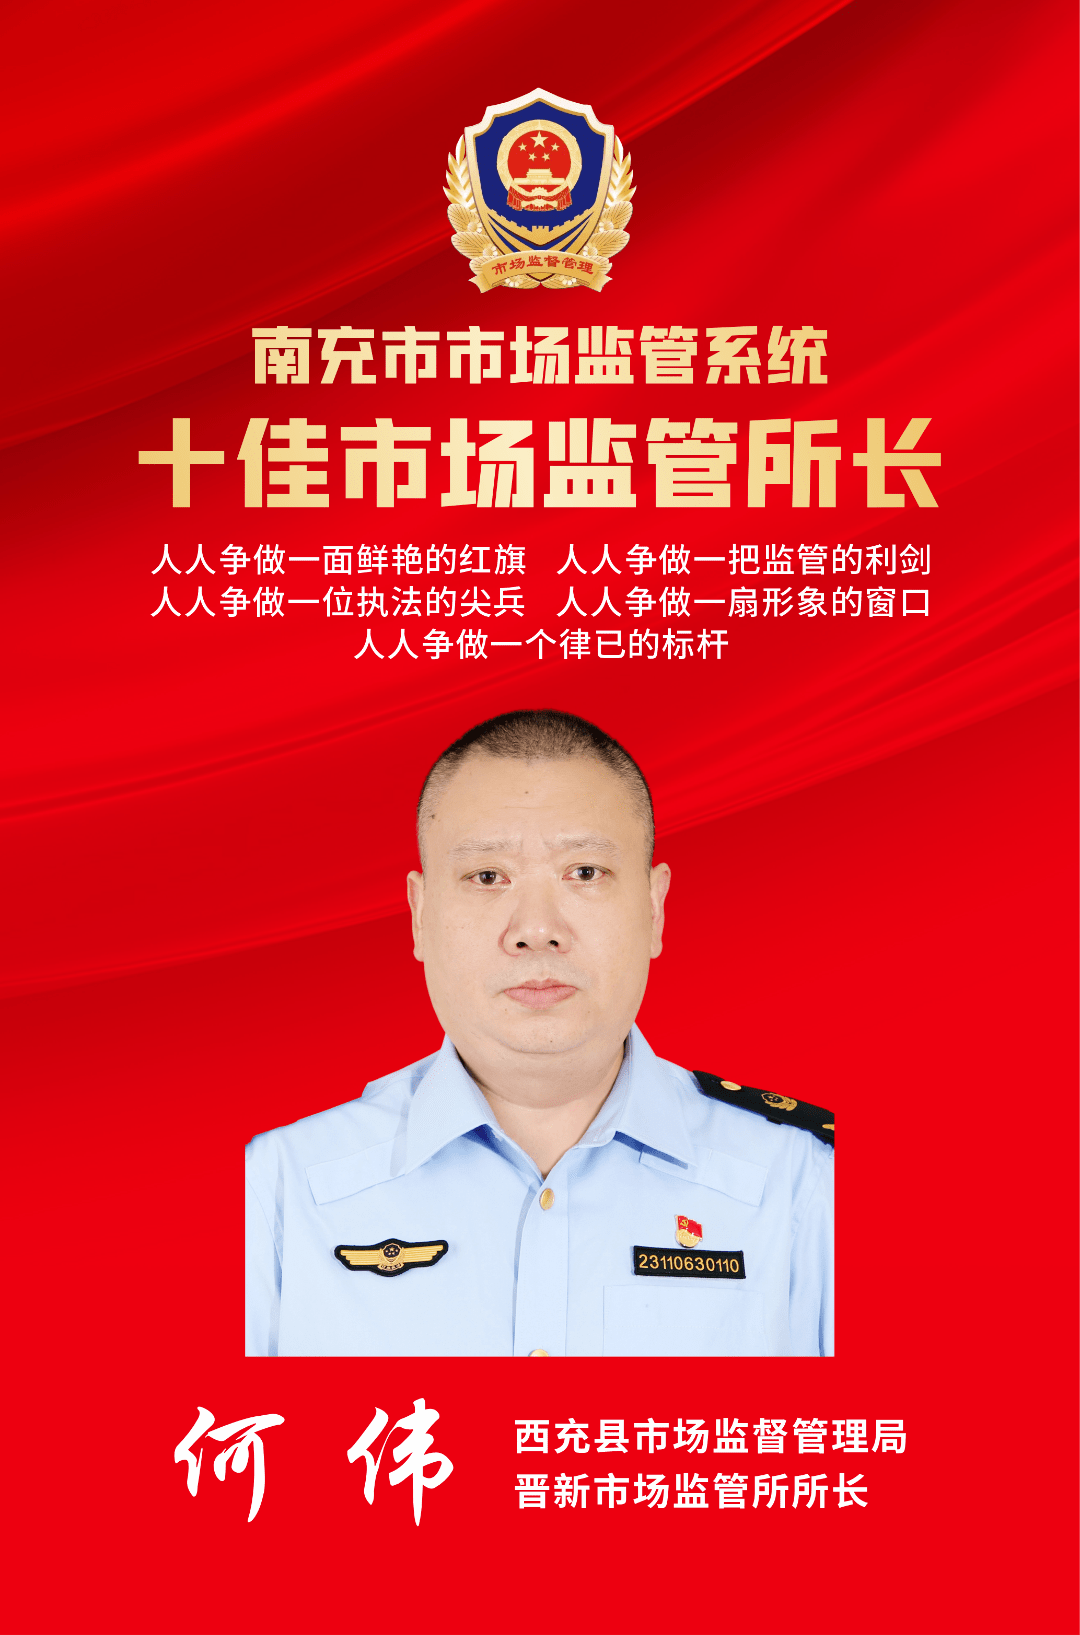 何伟,男,汉族,1974年5月出生,中共党员,现任西充县市场监督管理局晋新